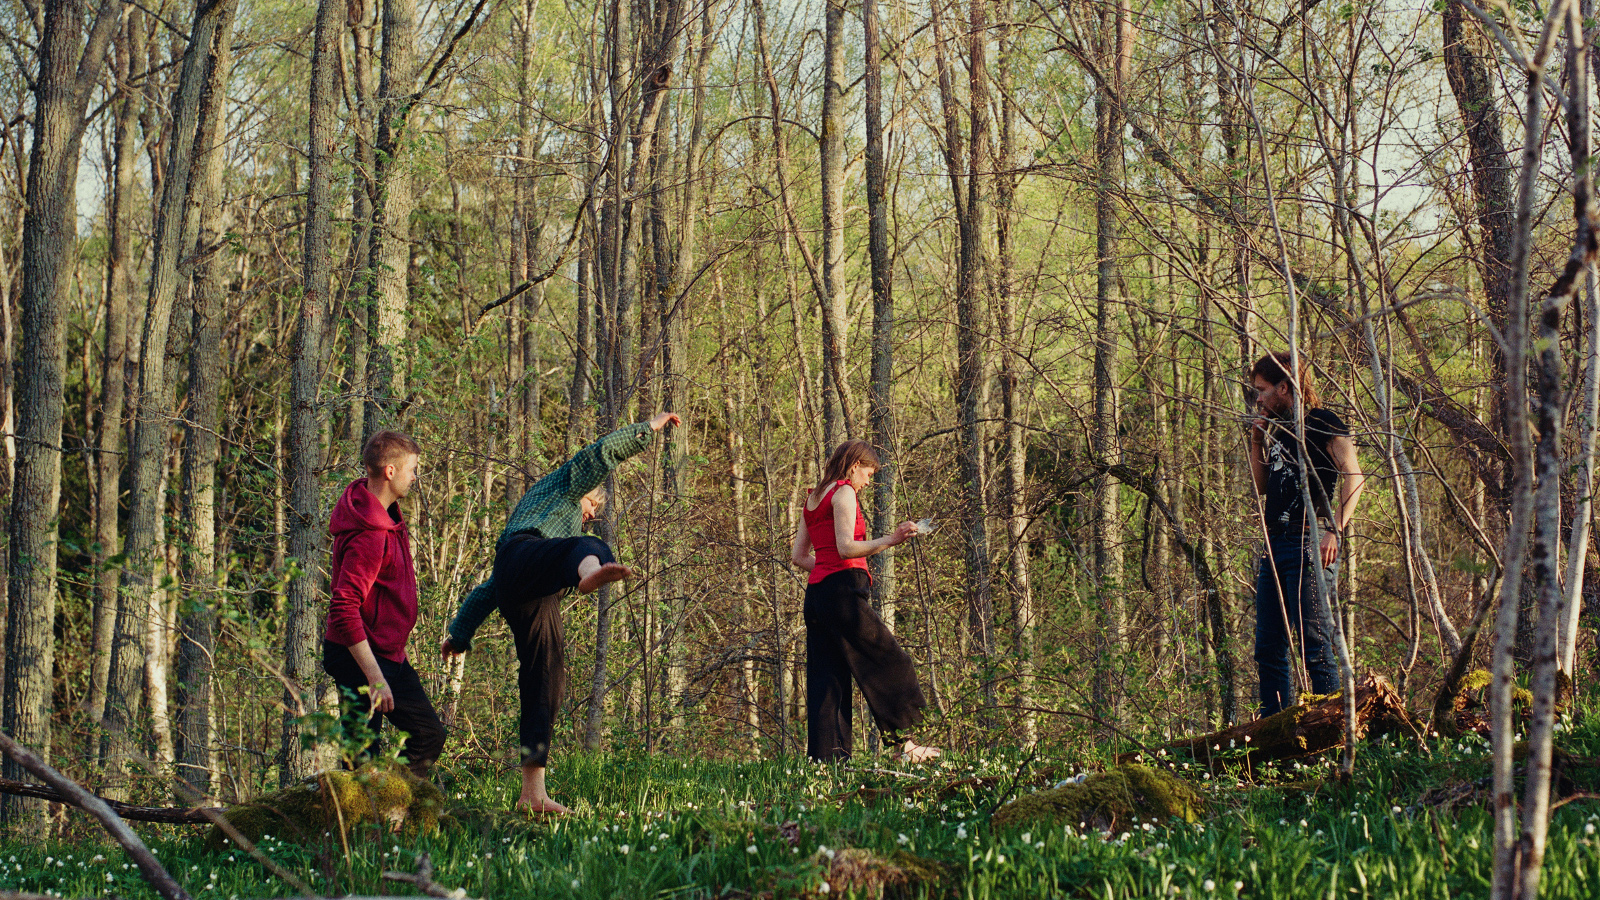  Kuvassa on neljä nuortaa kulkemassa metsässä.  Metsä on haavikkoa ja vaalean vihreän keväinen.